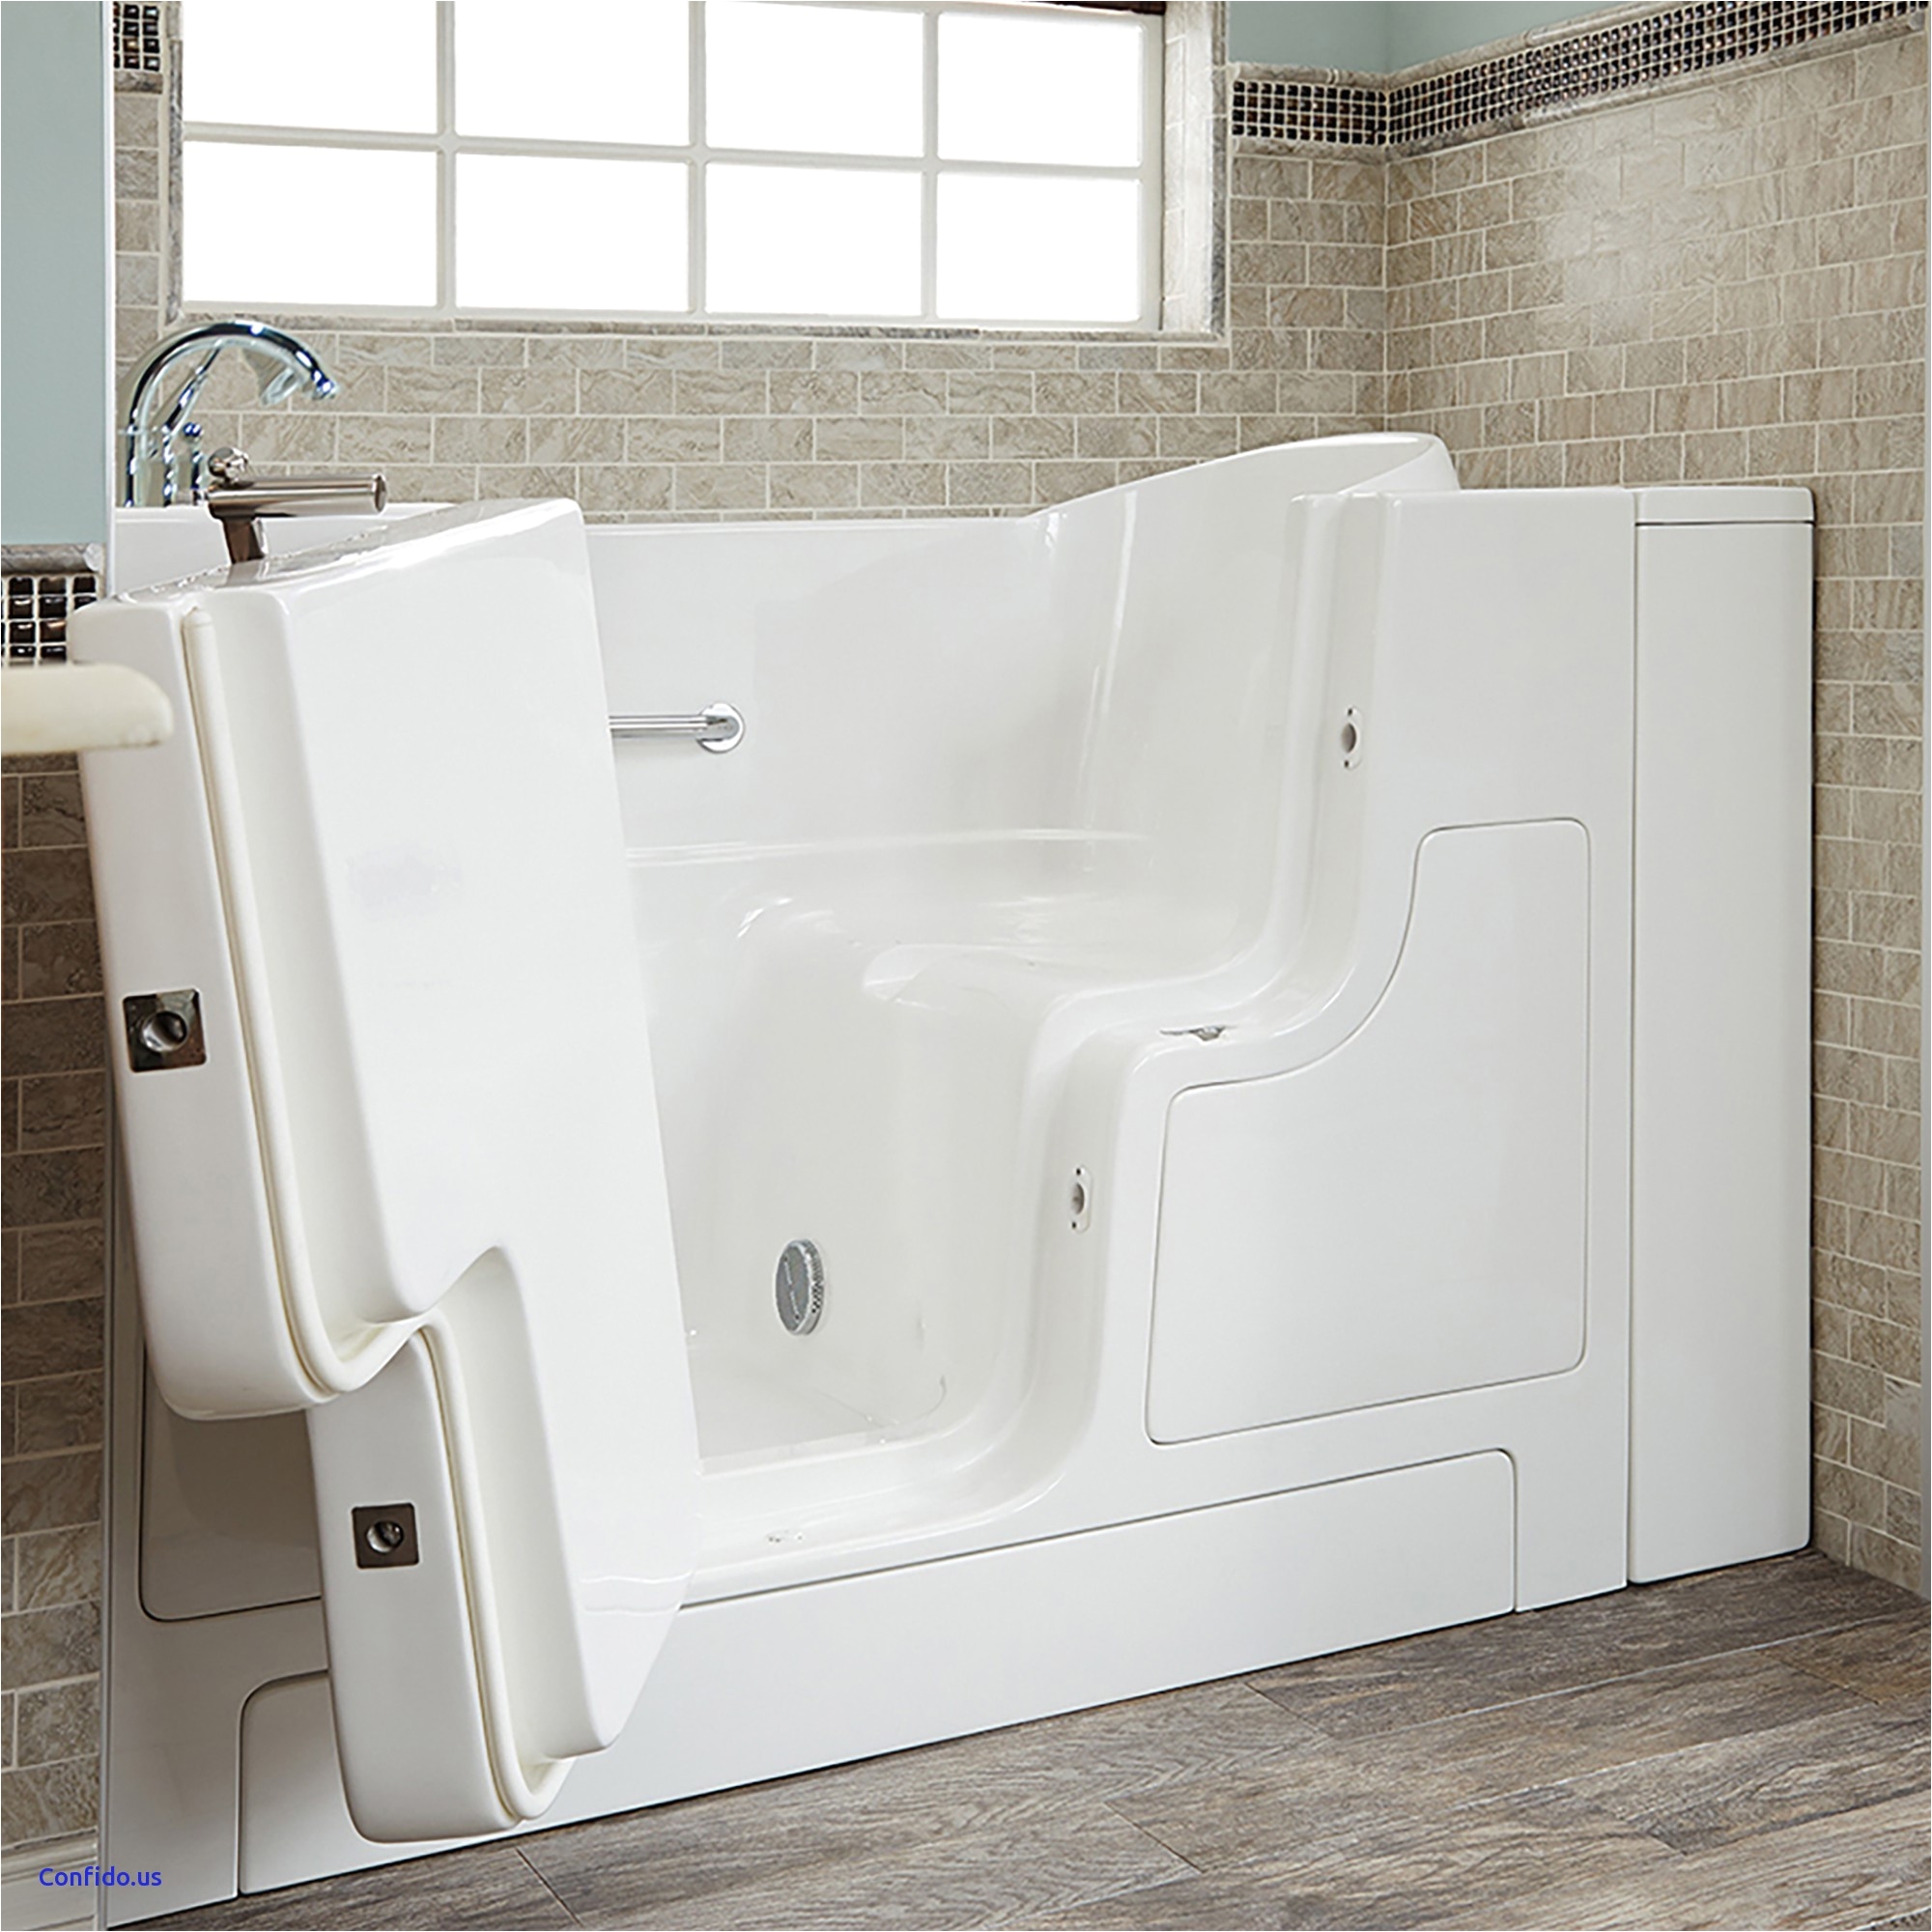 54 27 bathtub inspirational gelcoat value series 30 52 inch outward opening door soaking